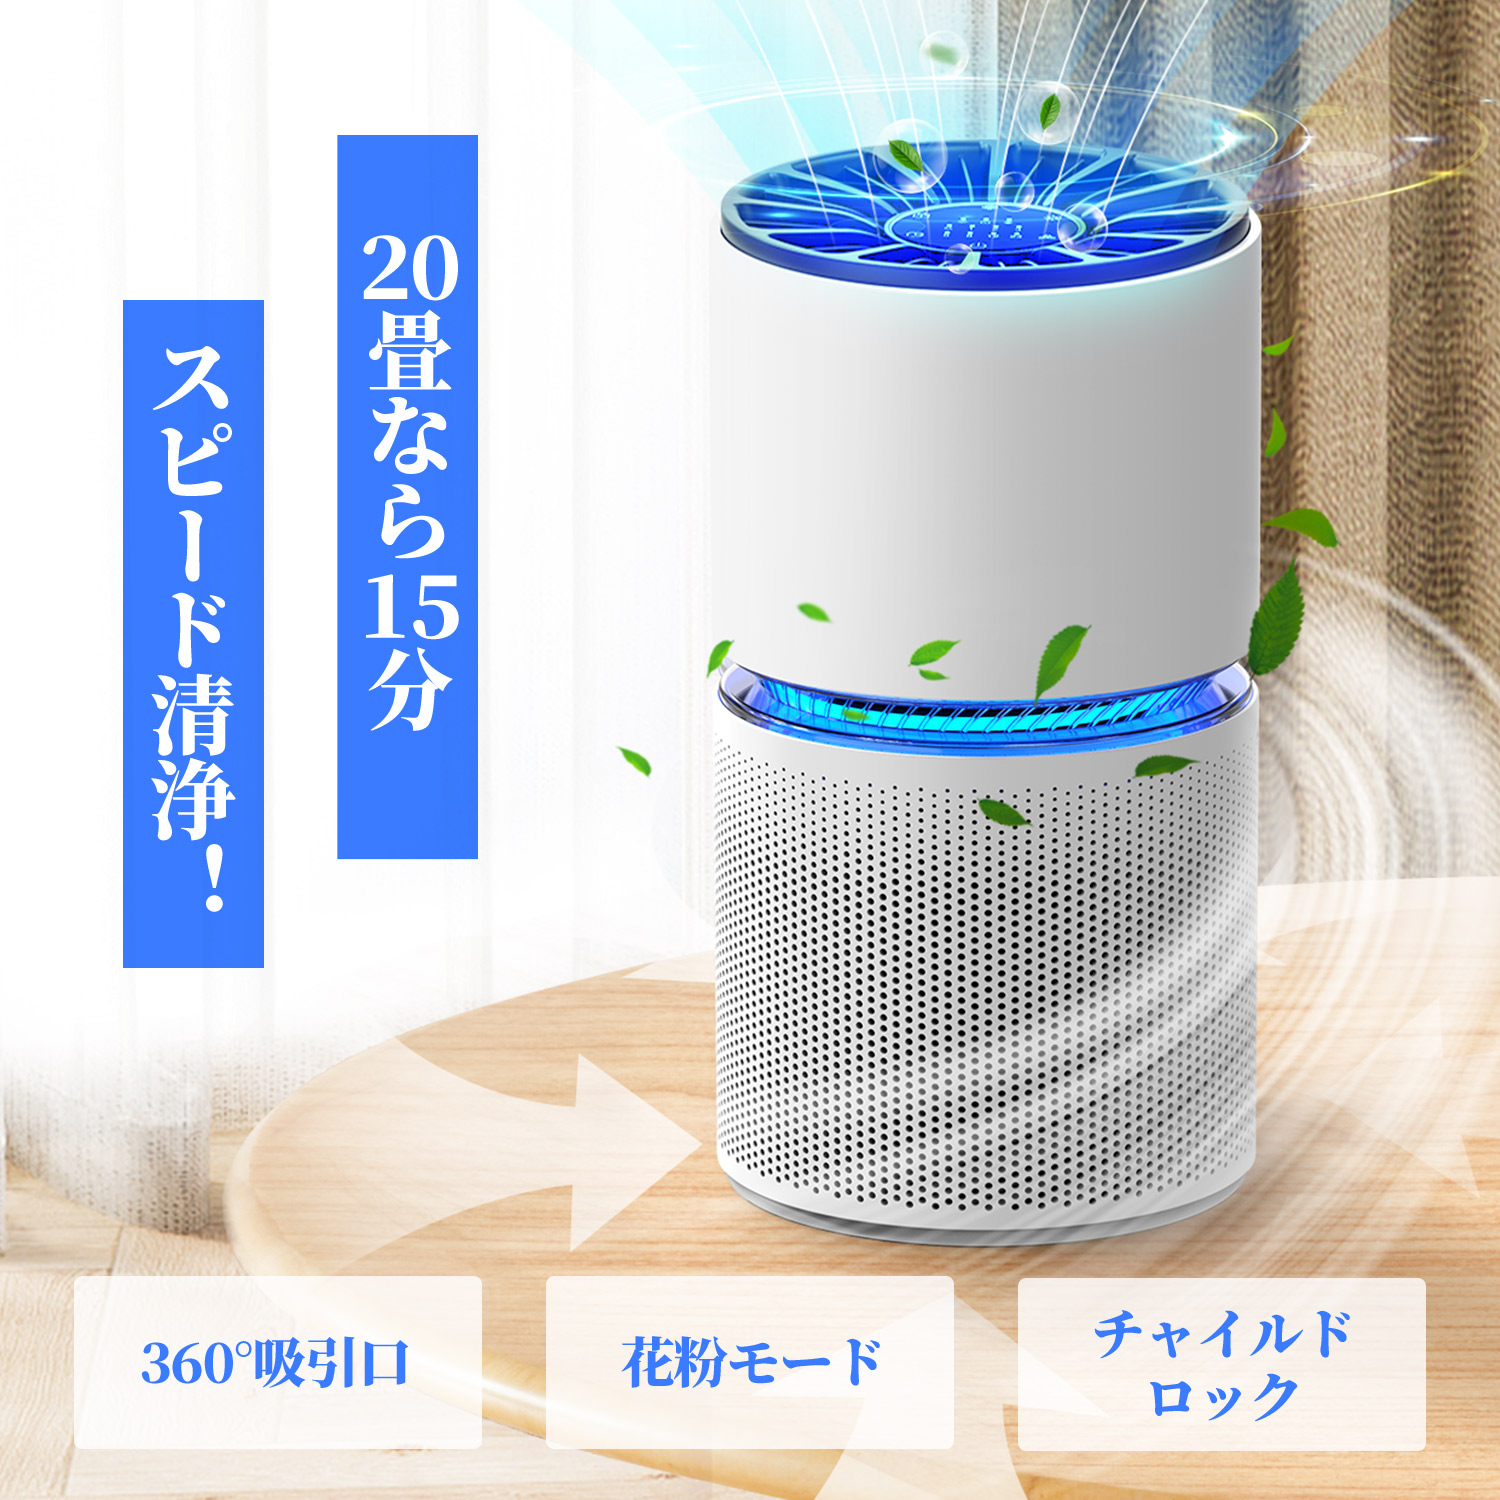 【楽天市場】【クーポンで5999円】KLOUDIC 空気清浄機 4段階切替